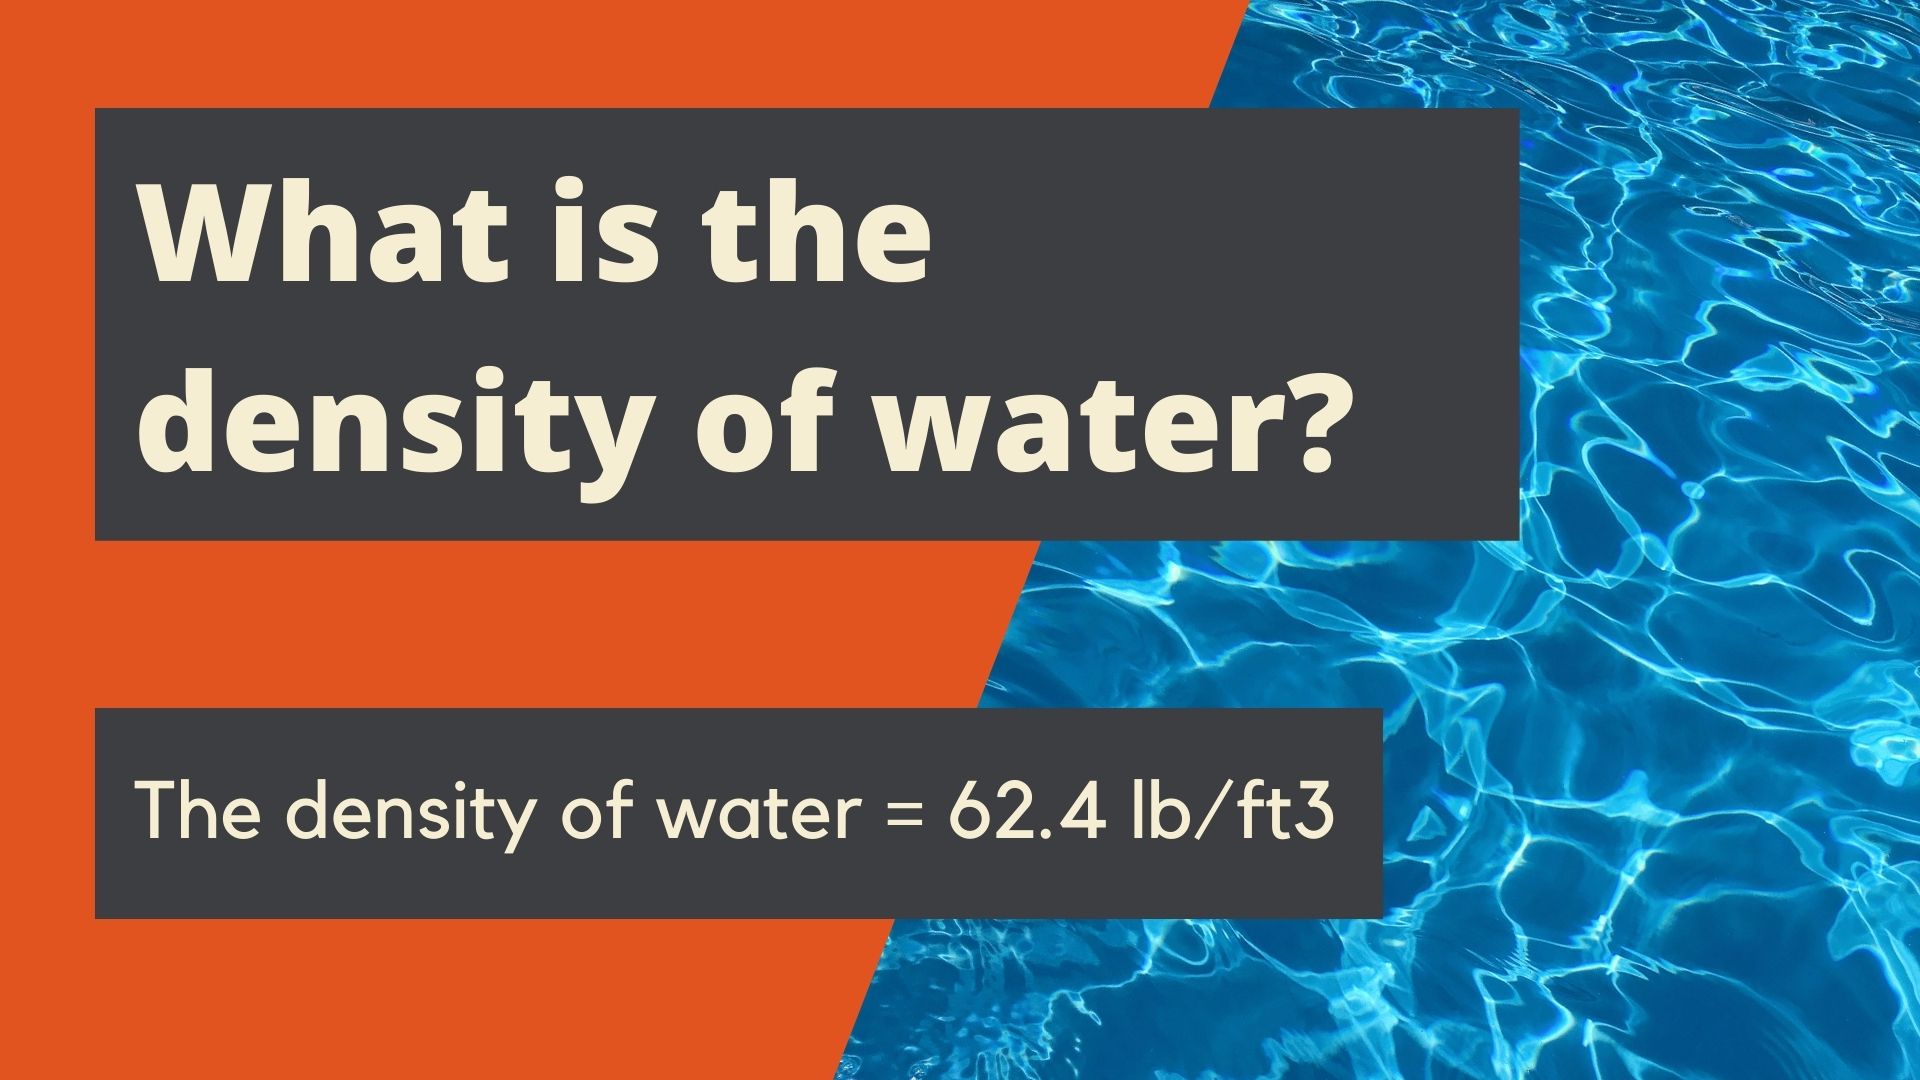 density of water in kgm3